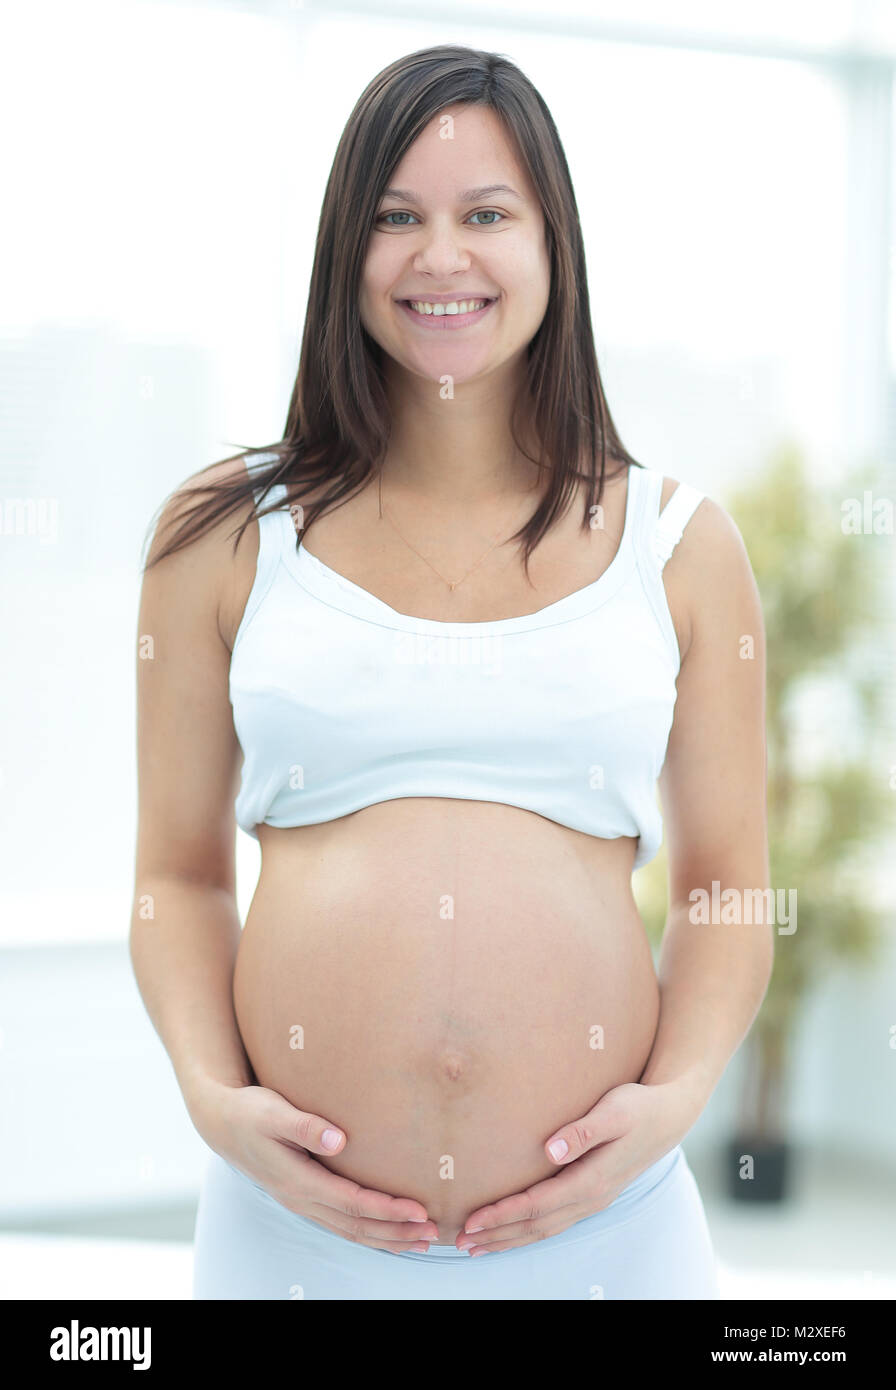 Schwangerschaft, Ausruhen, Menschen und Erwartung Konzept Stockfoto